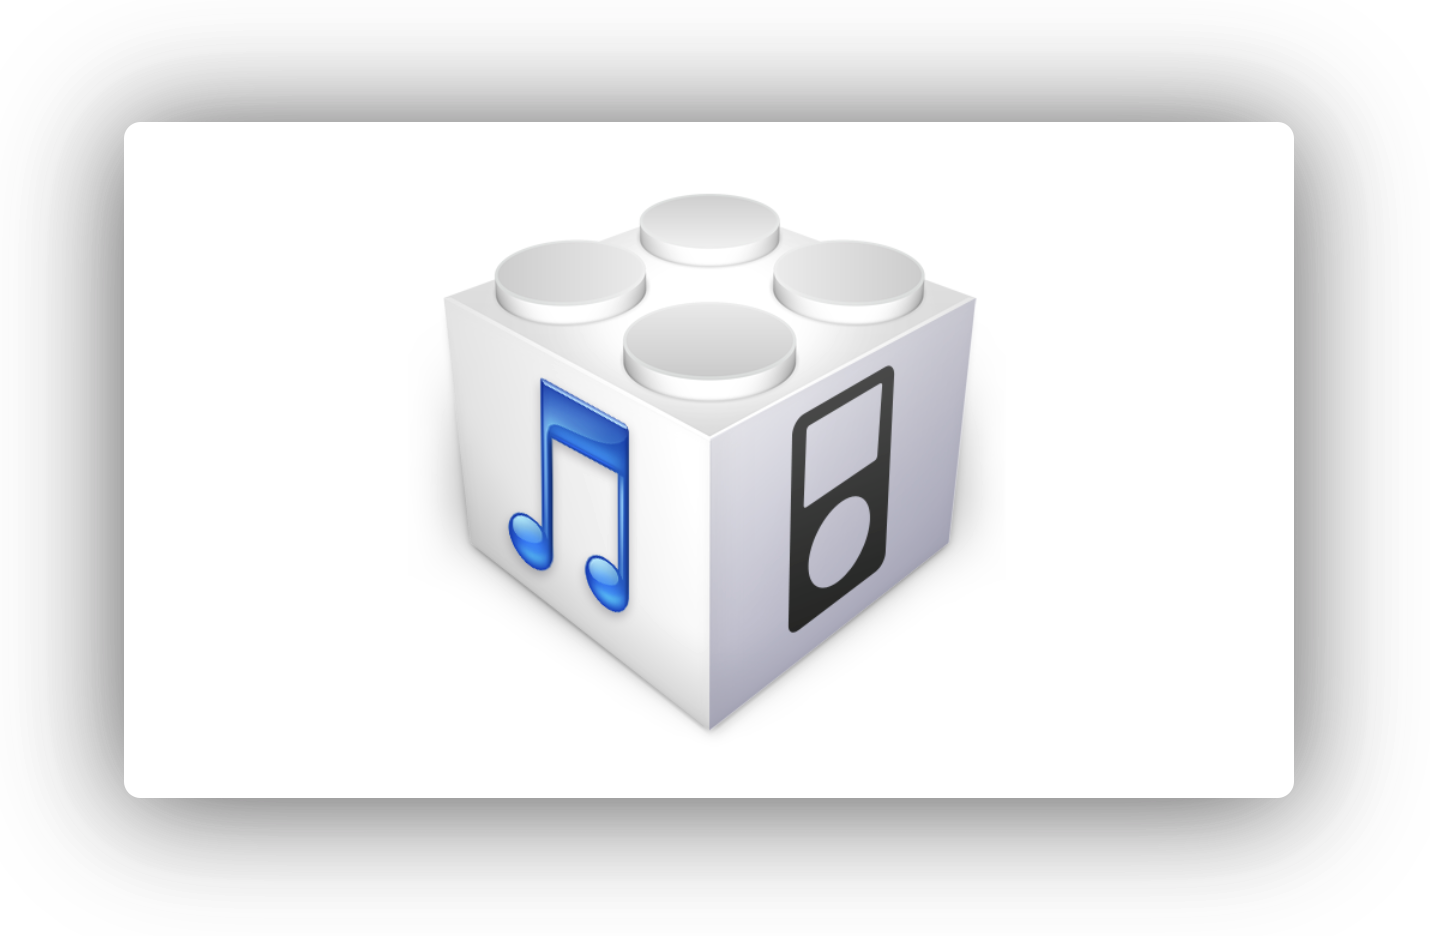 Apple、iOS 12.1およびiOS 12.1.1 betaリリースでiOS 12.0.1の署名を停止